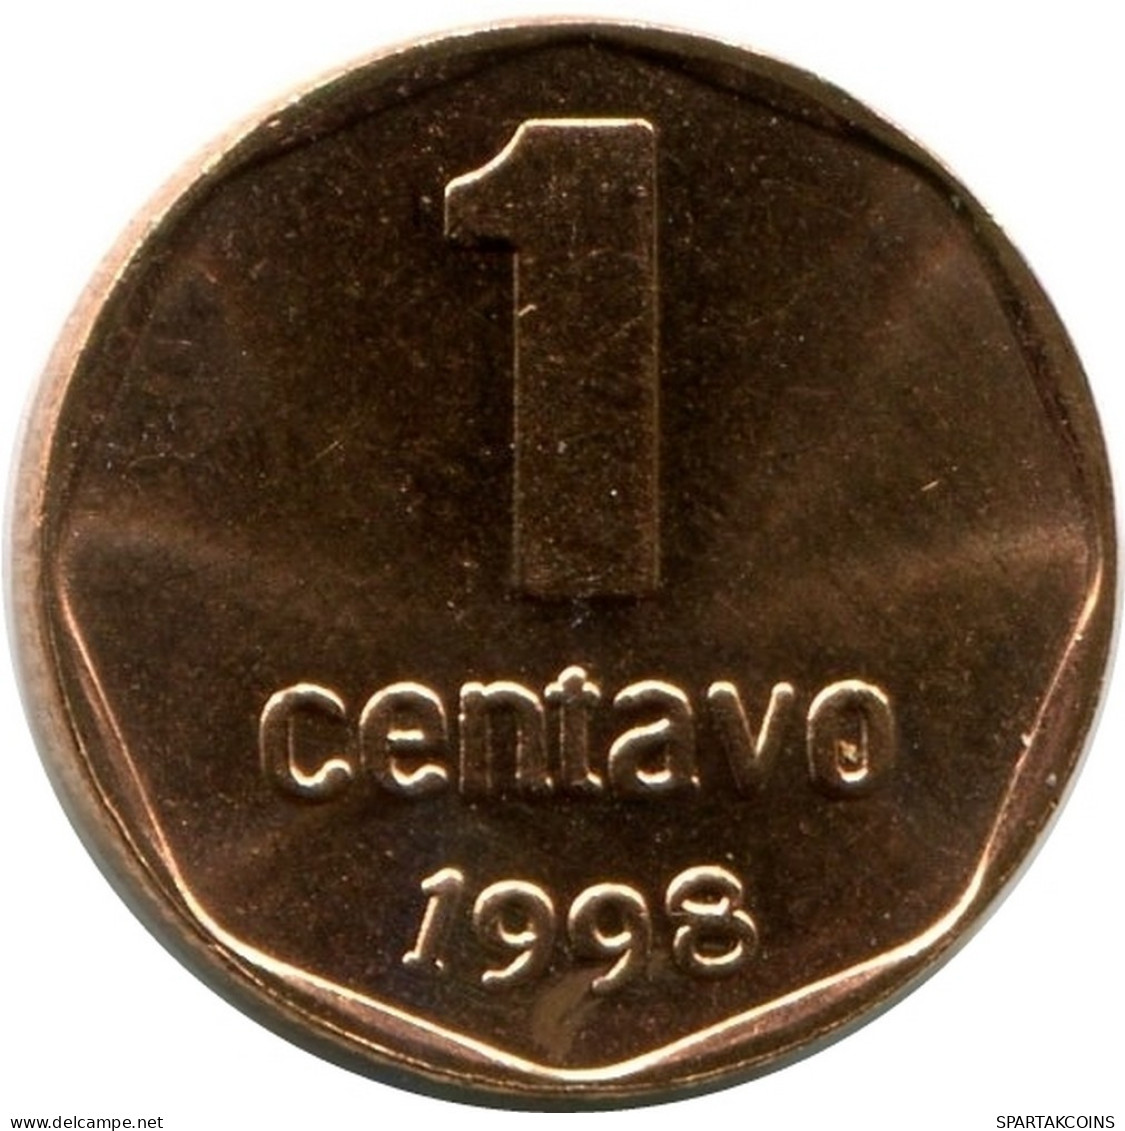 1 CENTAVO 1998 ARGENTINIEN ARGENTINA Münze UNC #M10140.D.A - Argentine